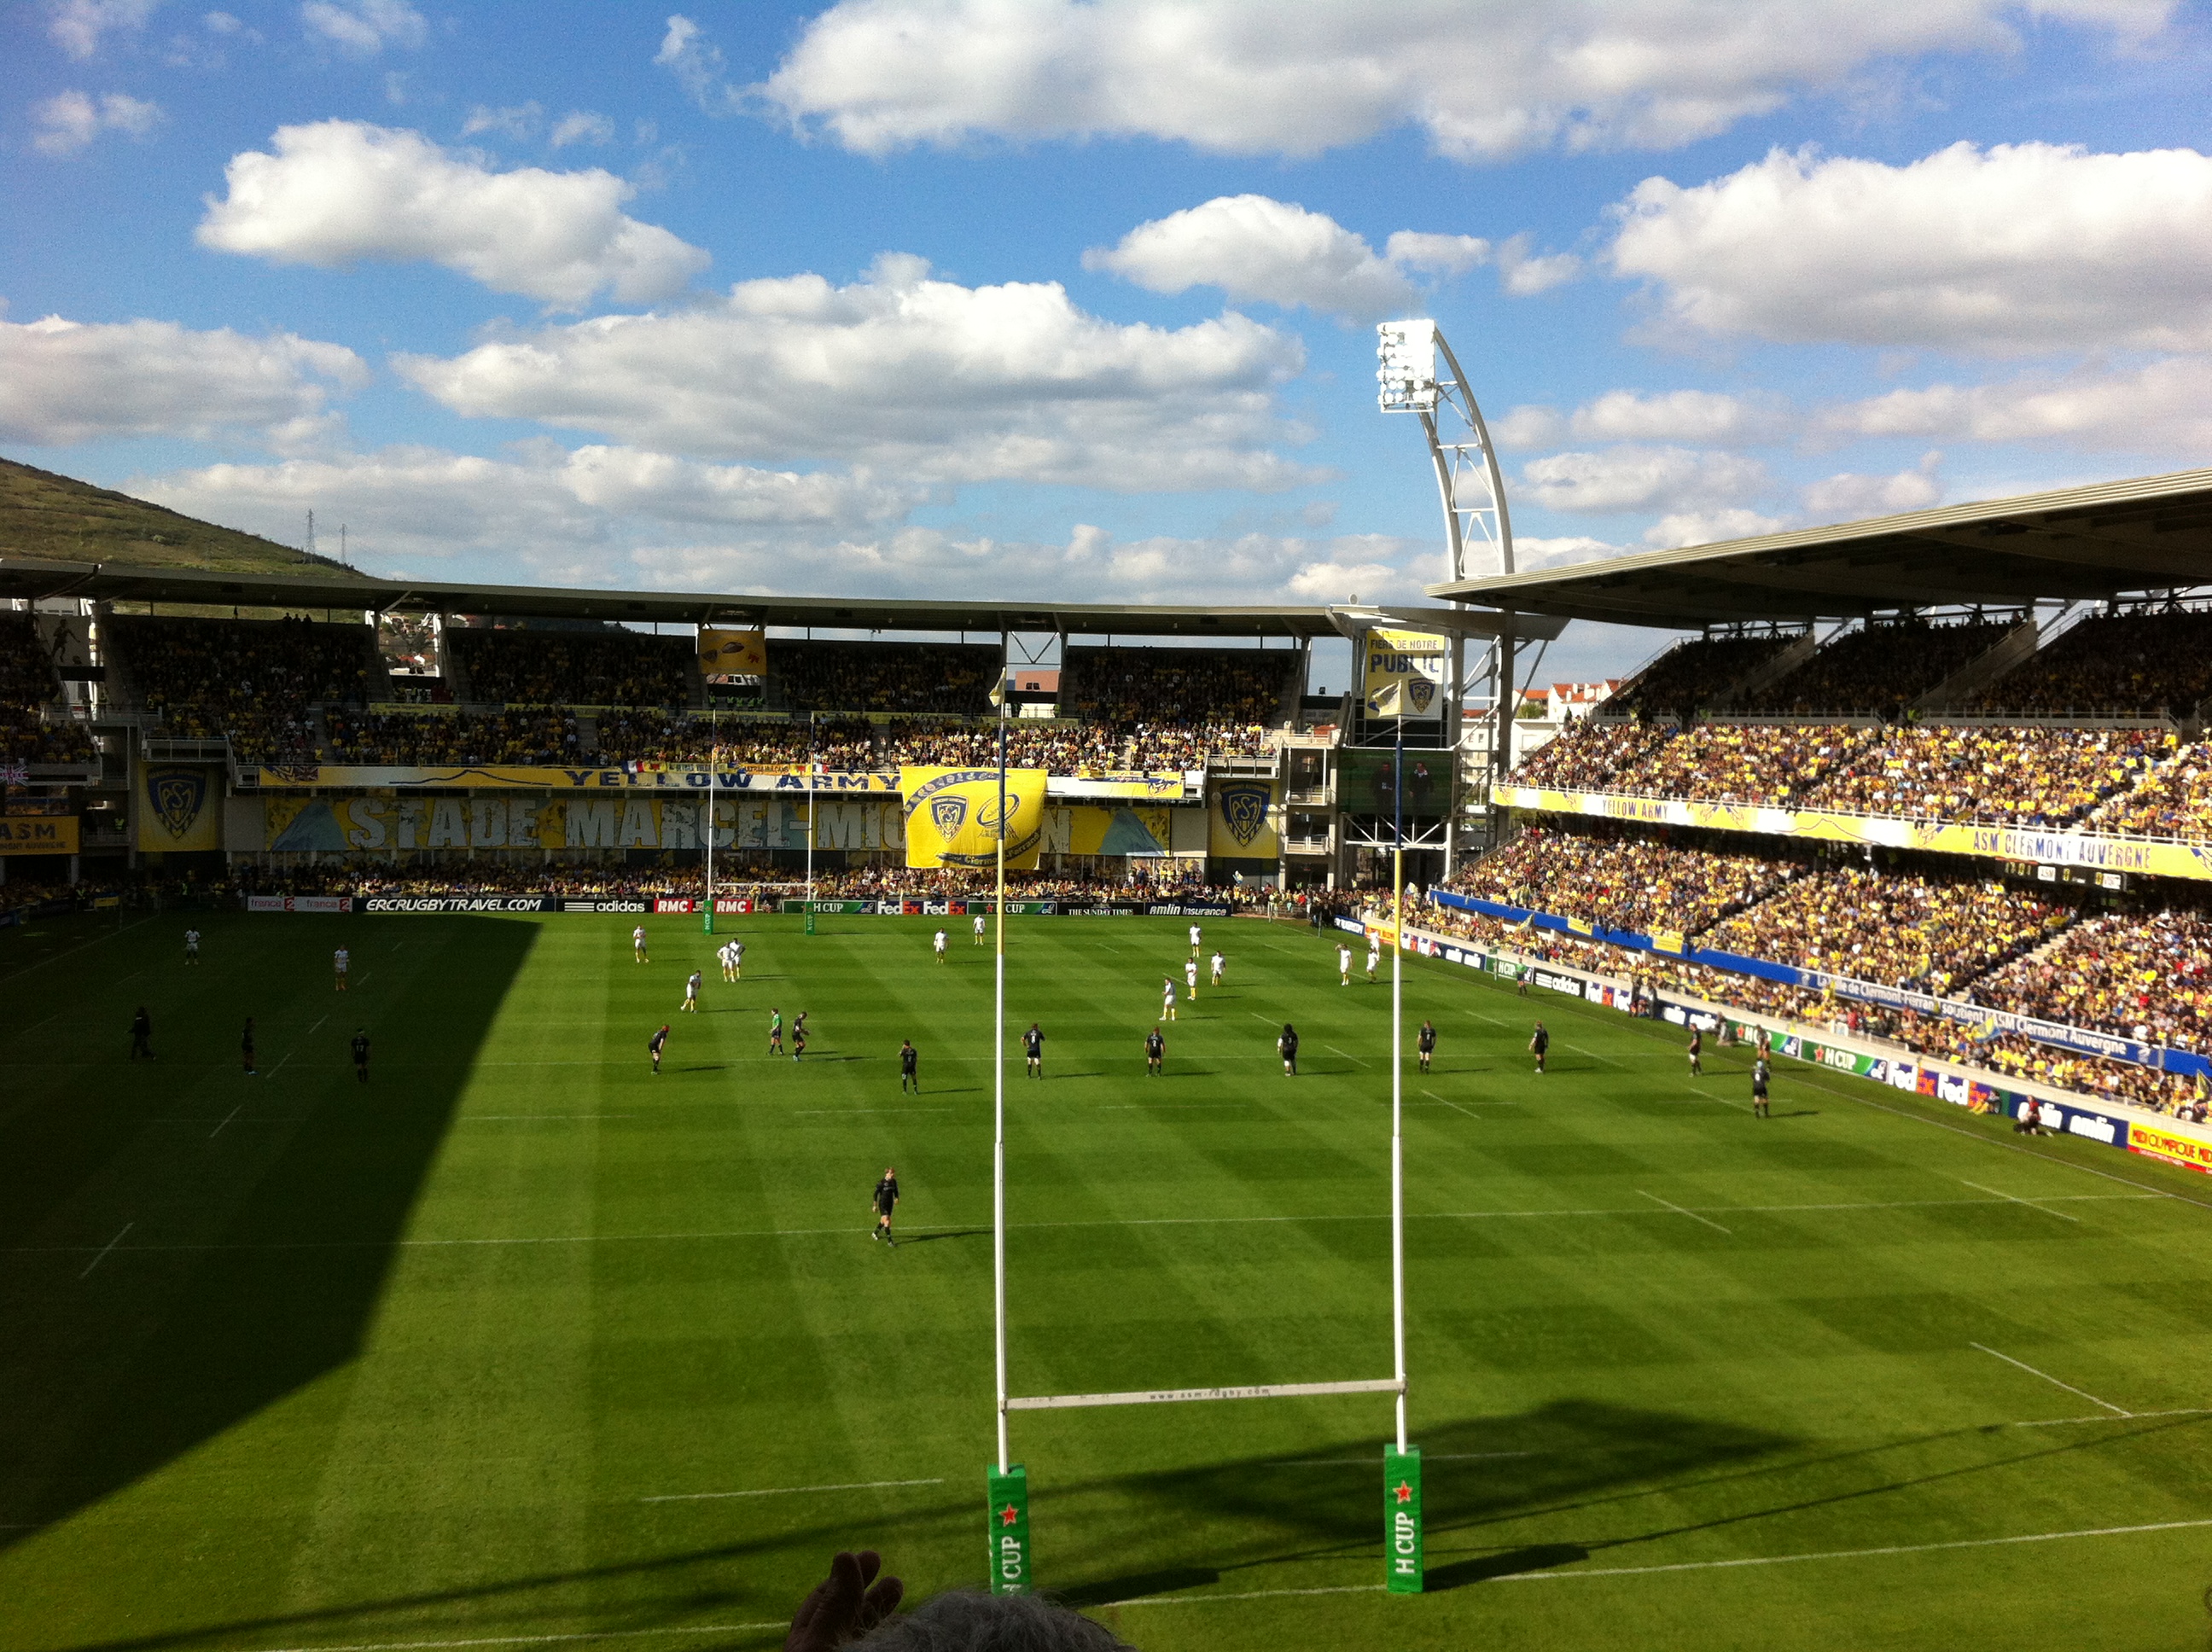 Clermont-stadium-match-action.JPG